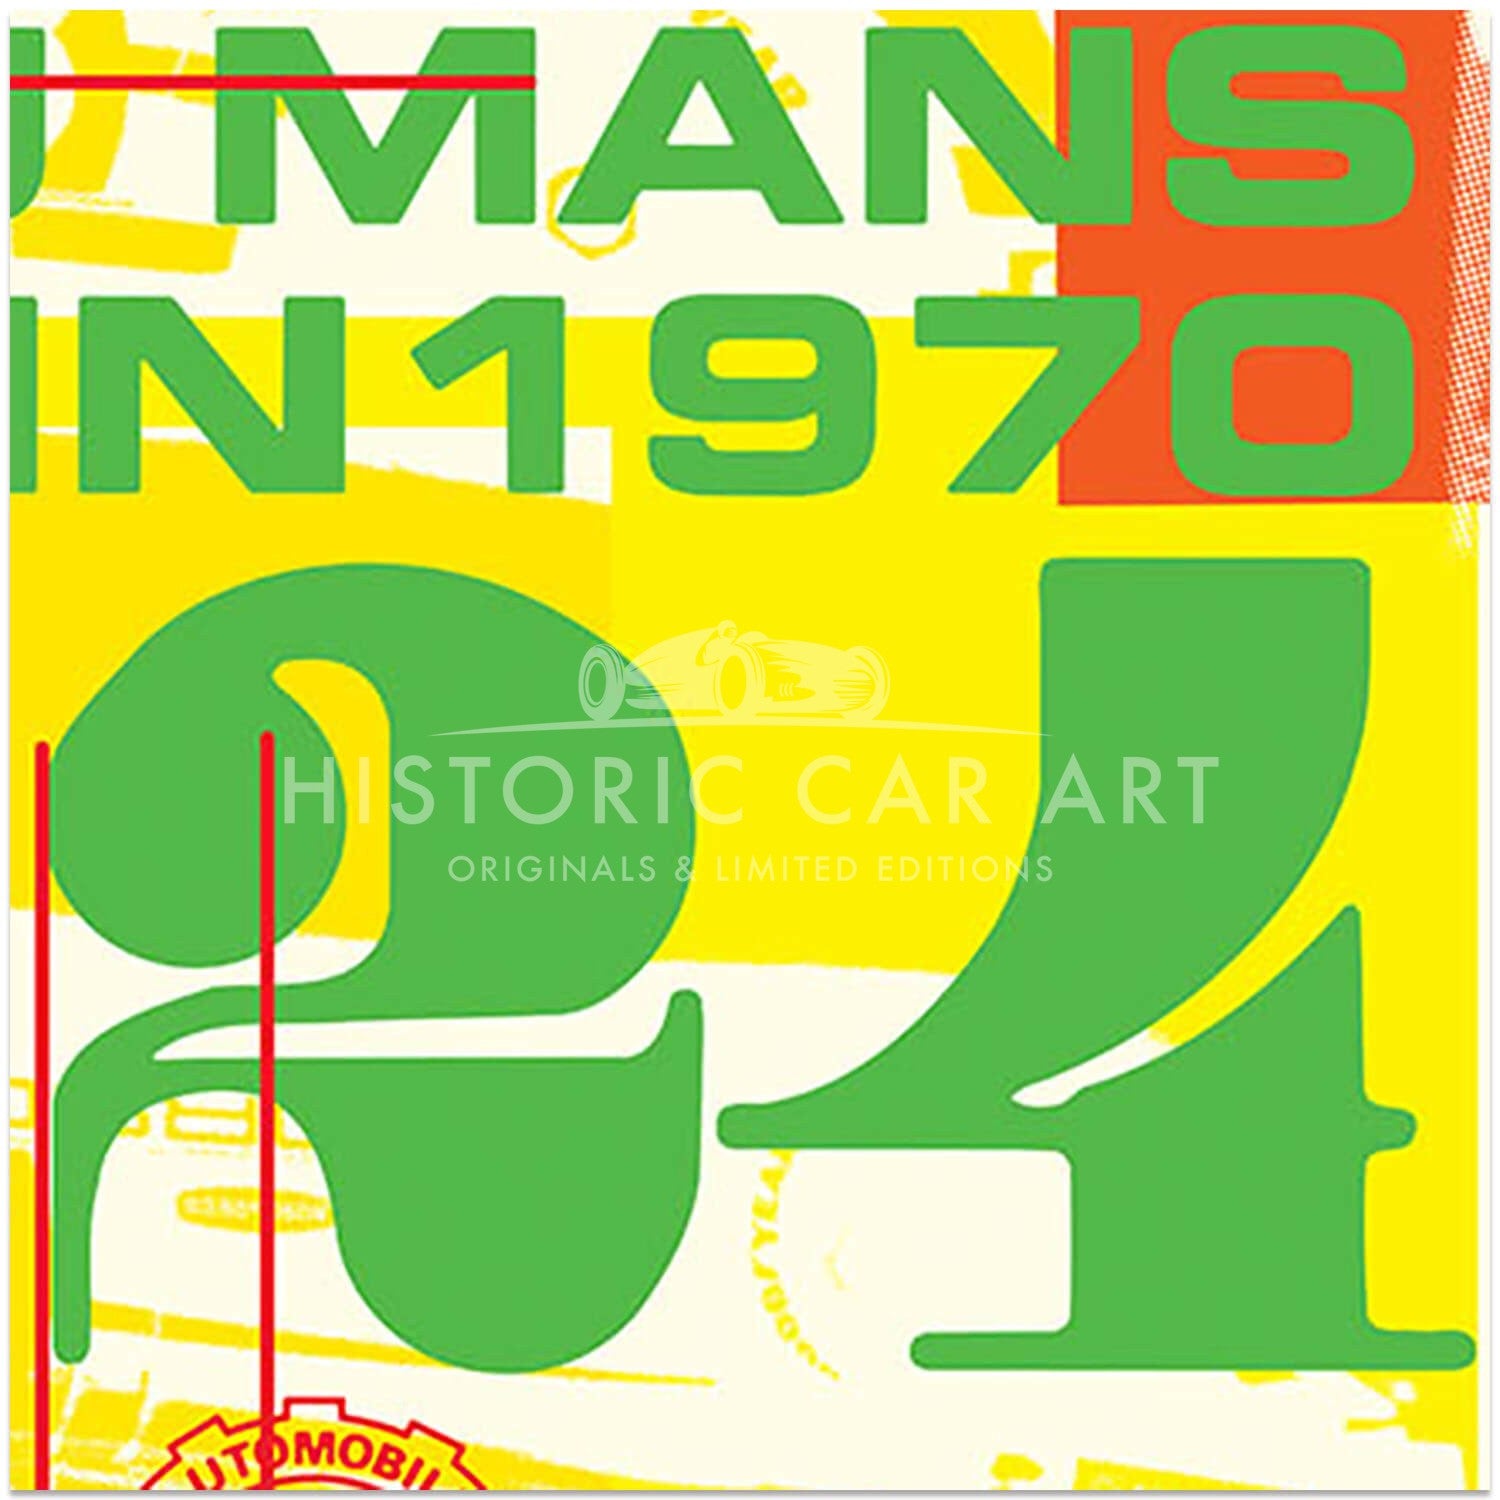 Porsche 917 | 1970 Le Mans 24 Hours Celebration | Art Print | Poster #2